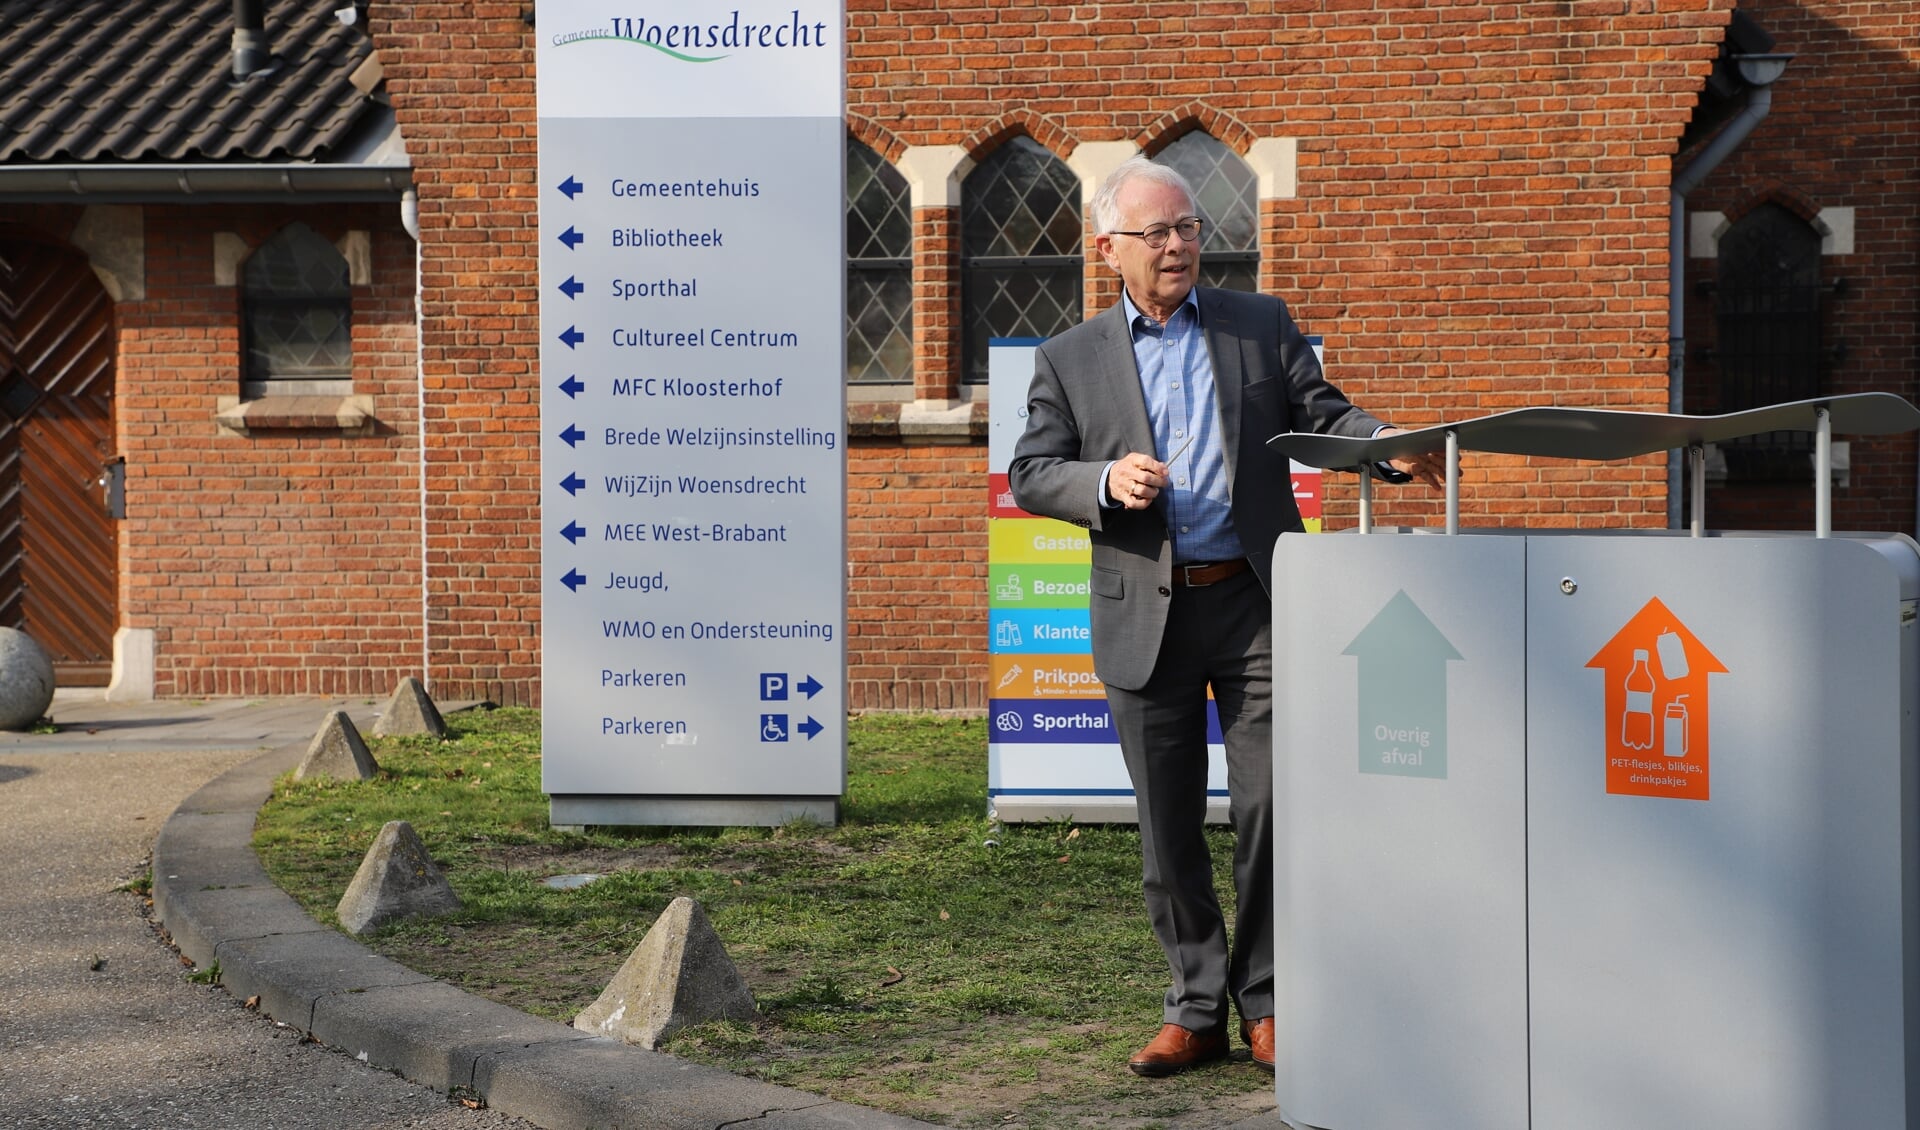 De nieuwe afvalbak met twee compartimenten om afval te scheiden is onthuld door wethouder Henk Kielman.